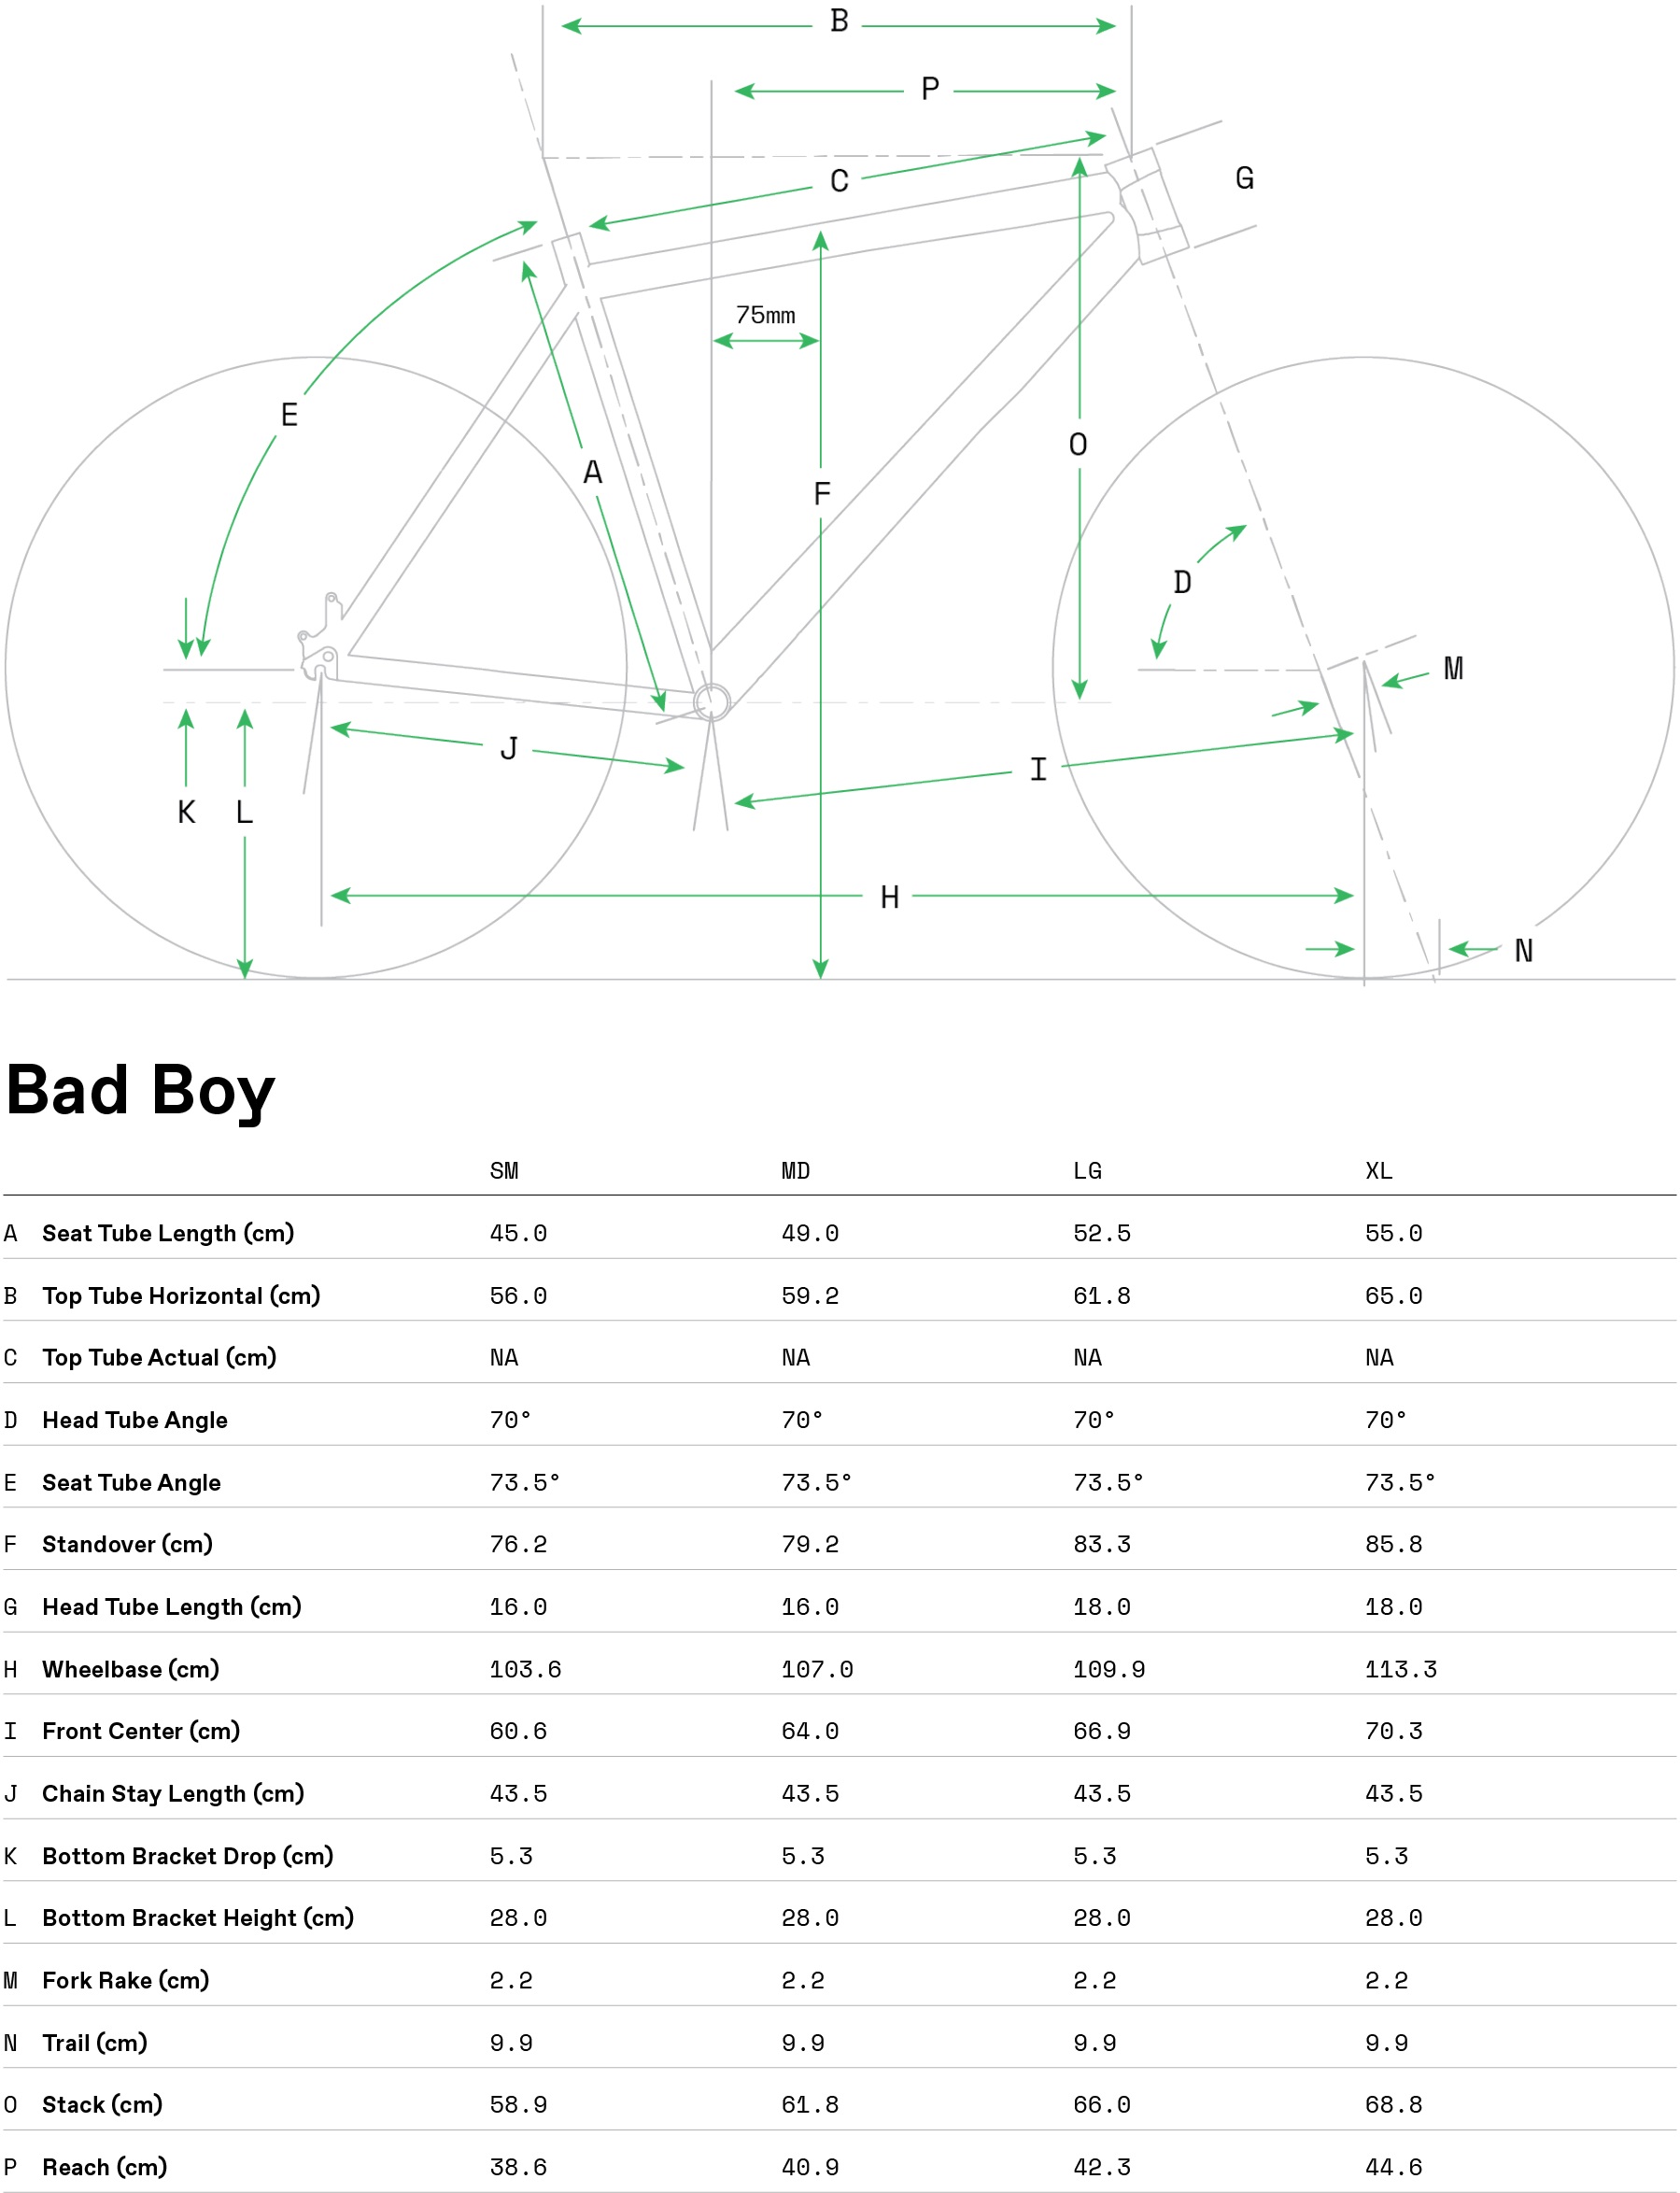 Geometria roweru Cannondale Bad Boy 3